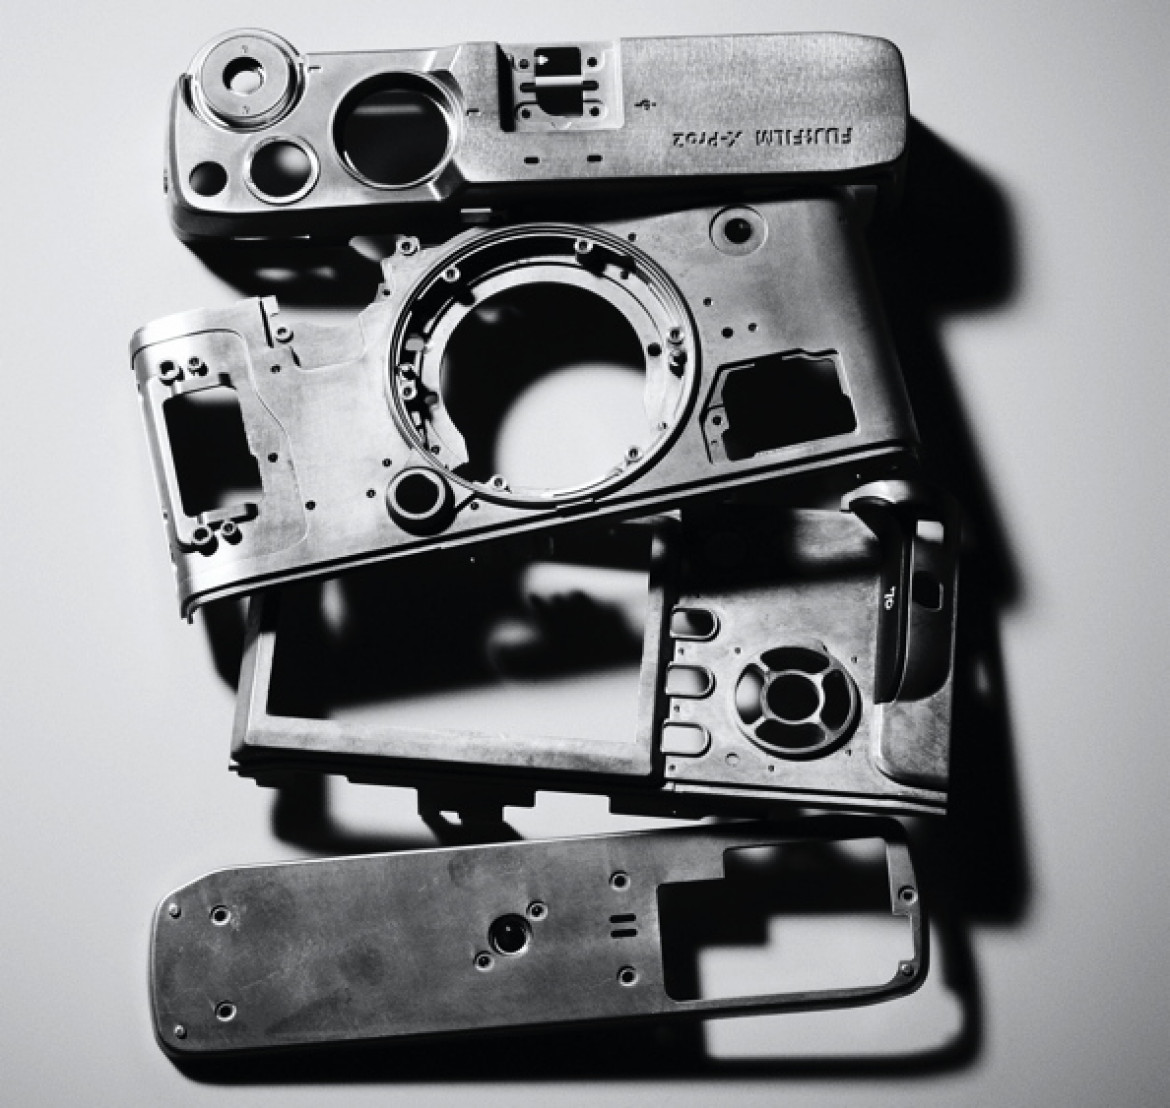 Magnezowy korpus Fujifilm X-Pro2